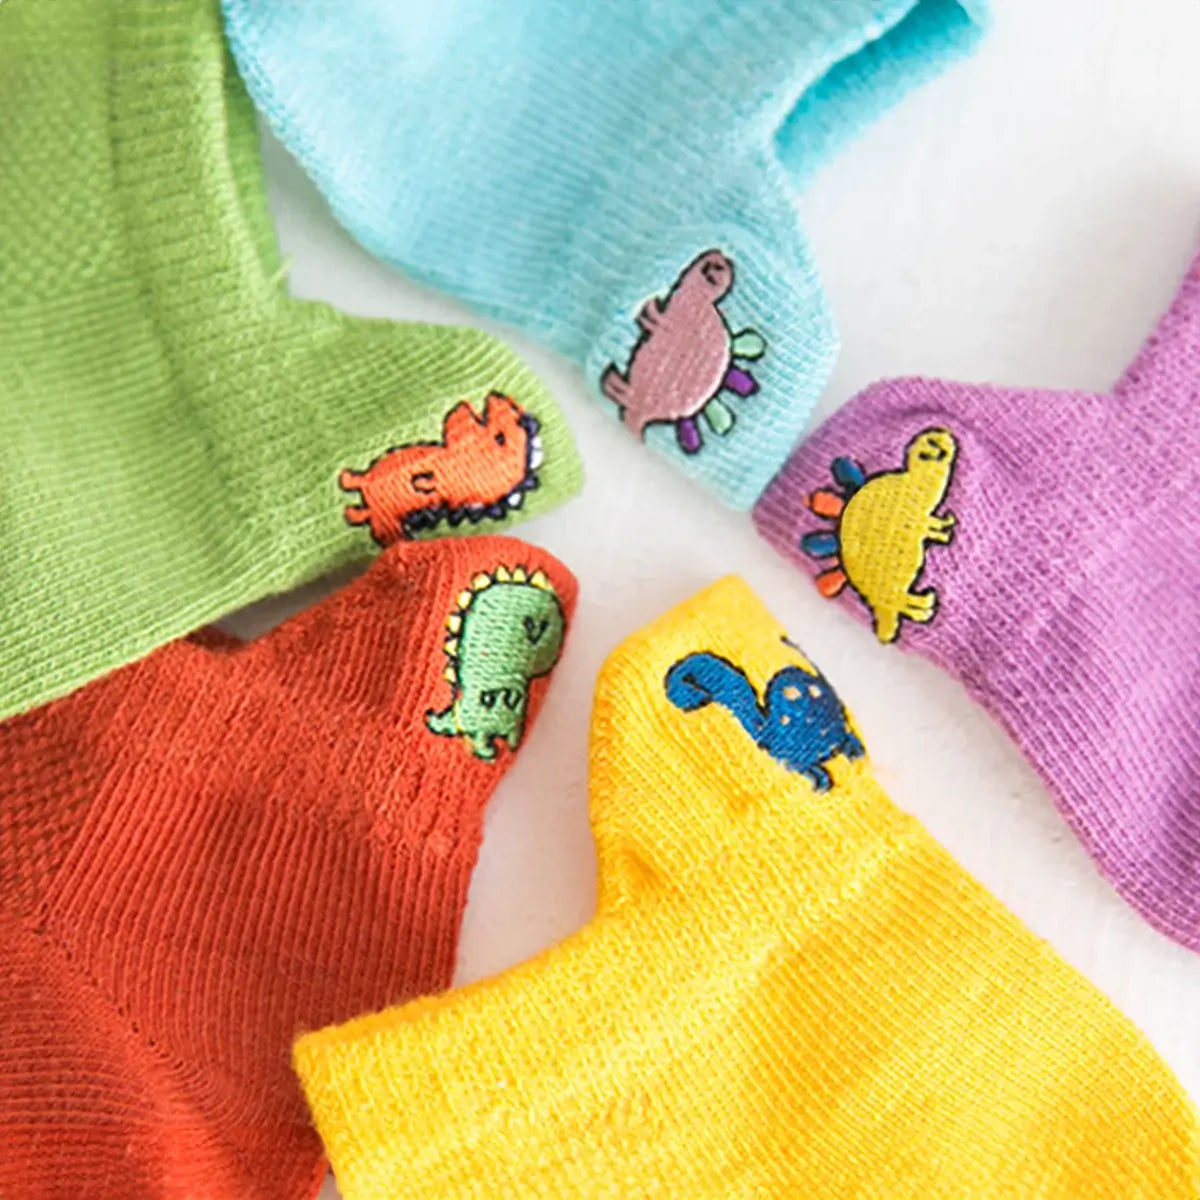 Lot de Chaussettes en coton à motif dinosaure pour enfants | Chaussettes confortables et douces | Disponibles en différentes tailles et couleurs | Un cadeau idéal pour les enfants de tous âges